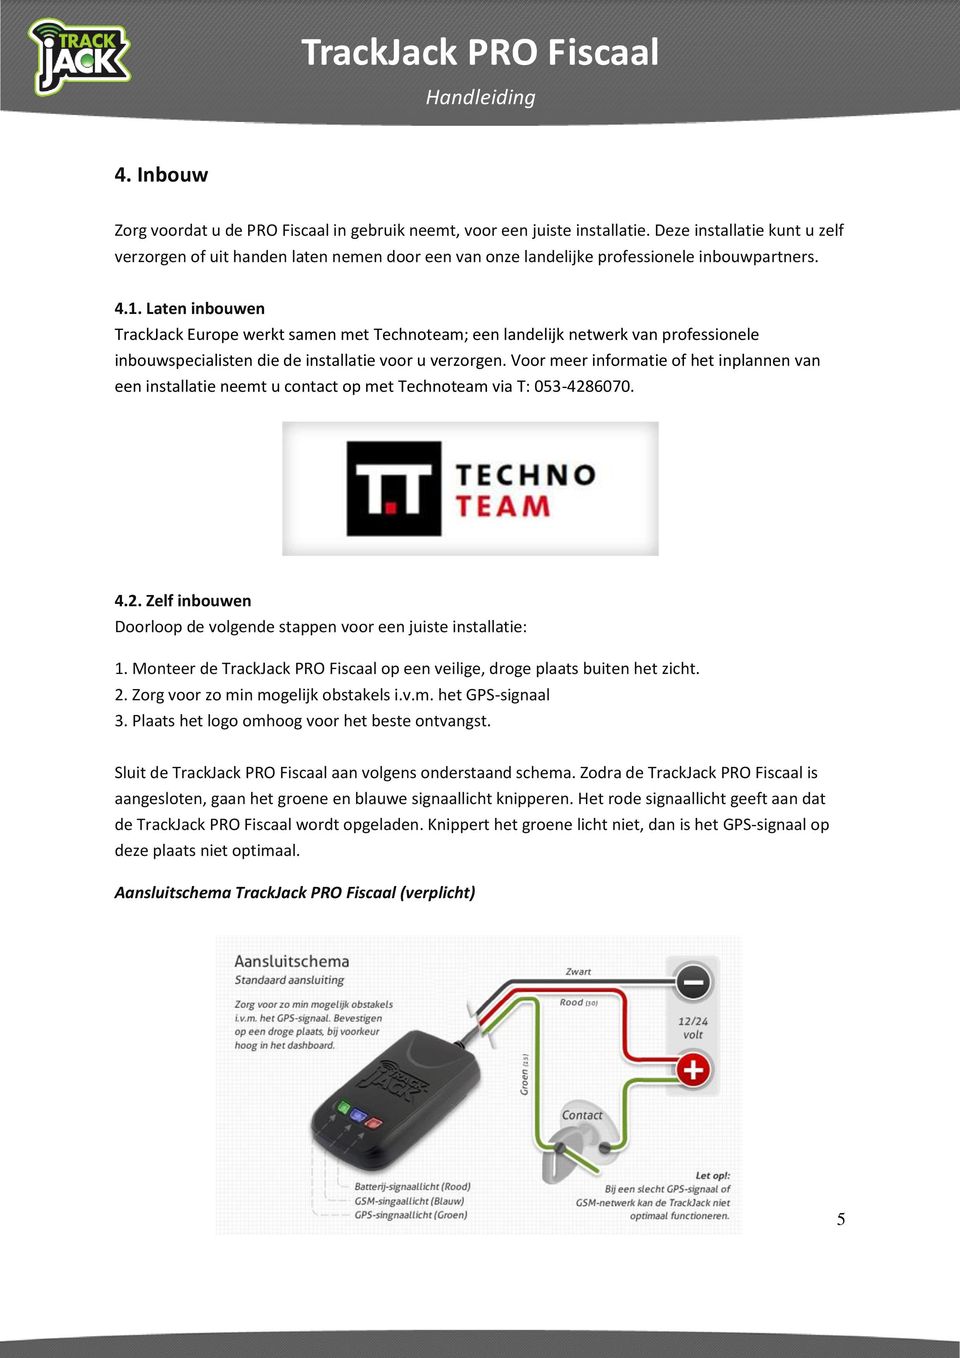 Laten inbouwen TrackJack Europe werkt samen met Technoteam; een landelijk netwerk van professionele inbouwspecialisten die de installatie voor u verzorgen.